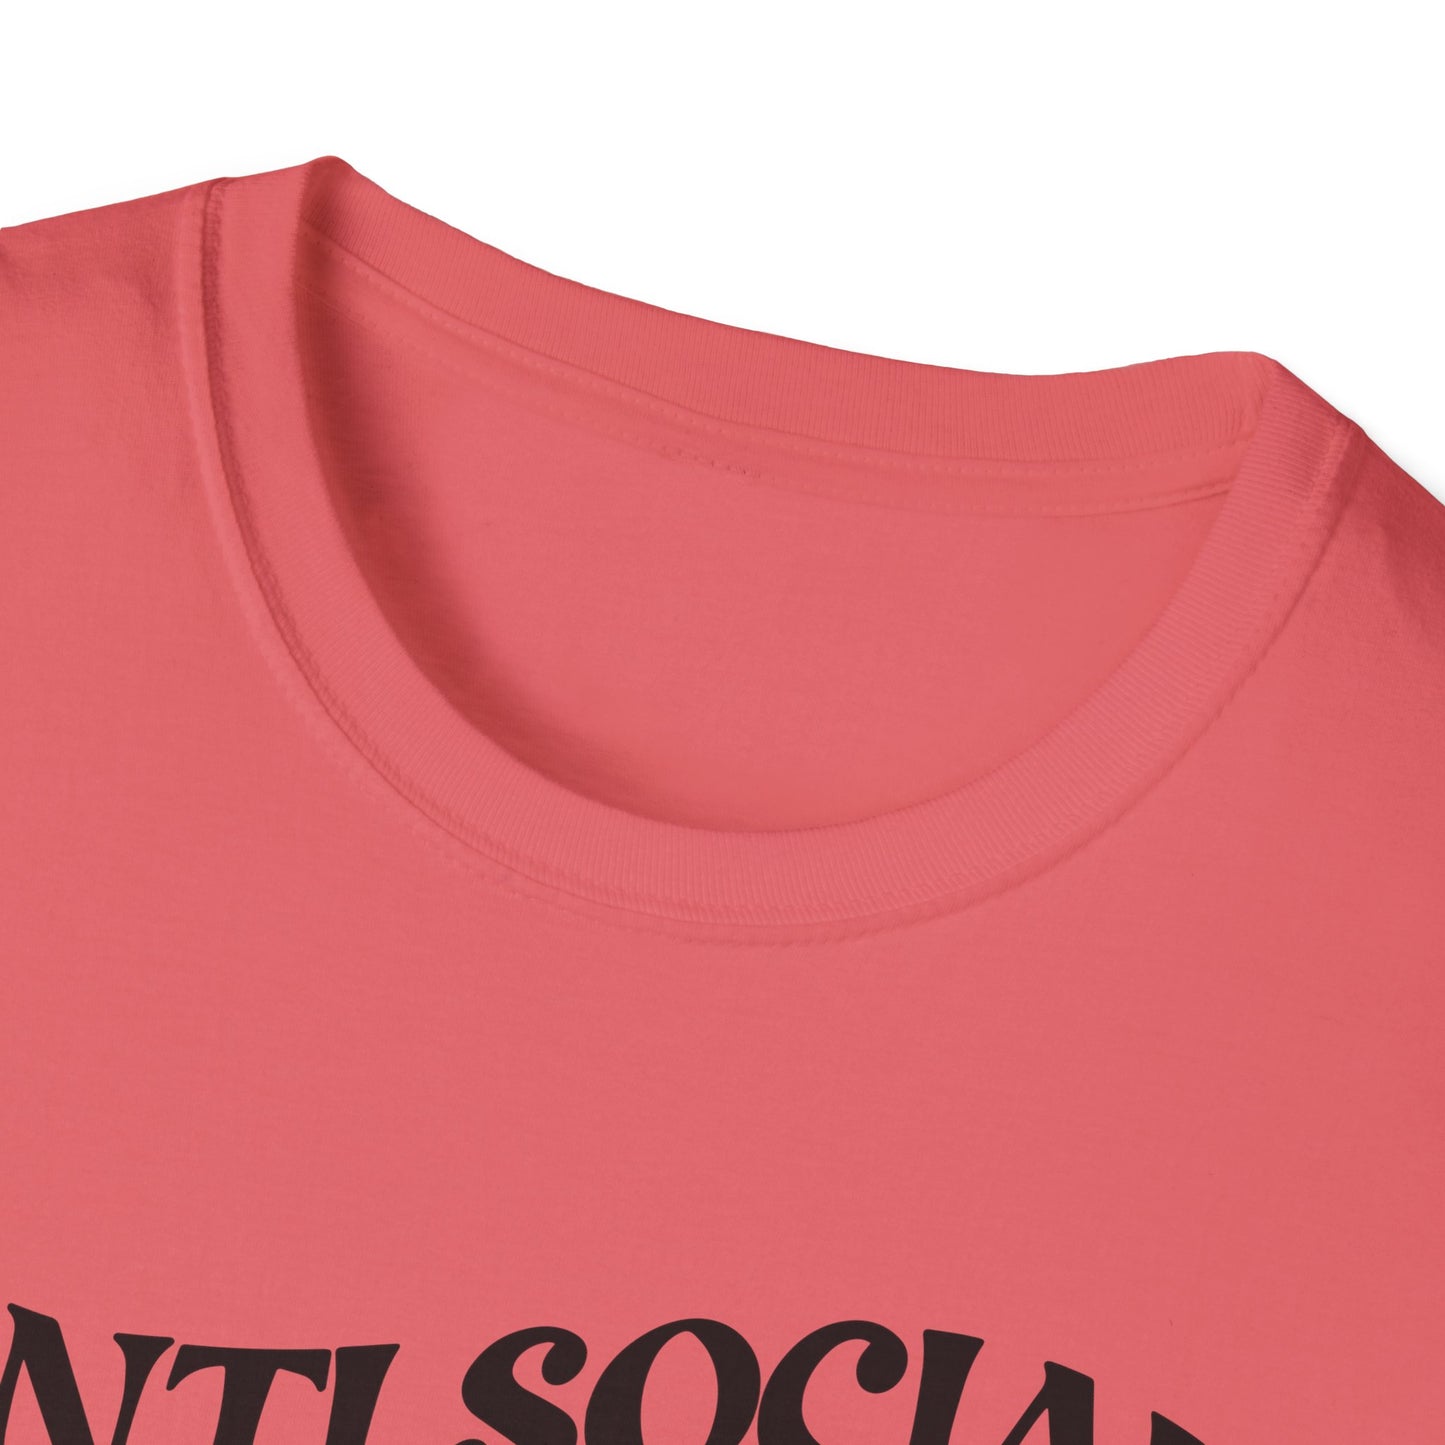 ANTISOCIAL DOG MOM - Unisex Softstyle T-Shirt